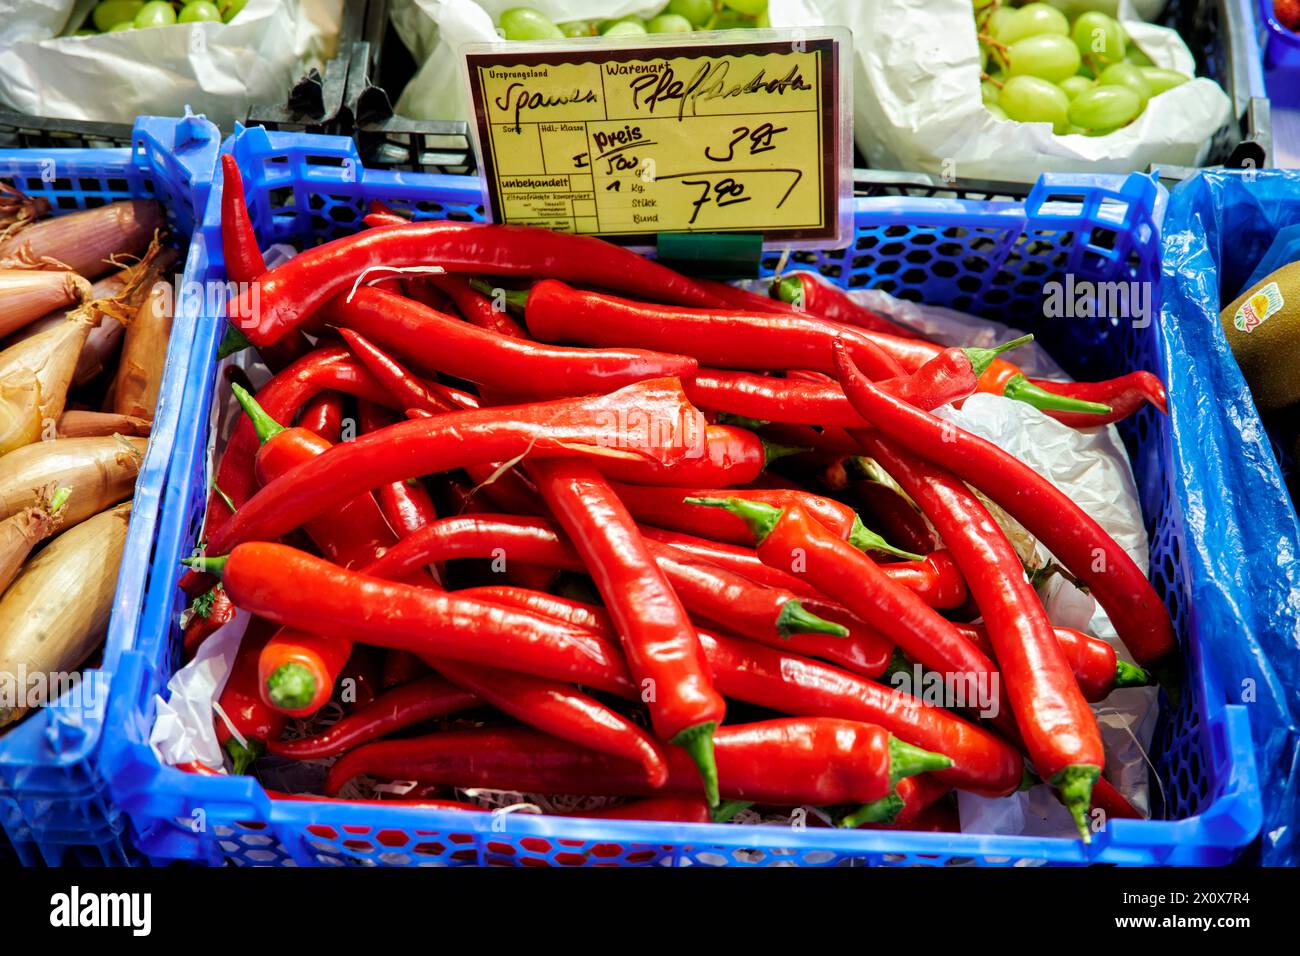 Reichhaltige Obst- und Gemüseauswahl an einem Marktstand. Foto Stock